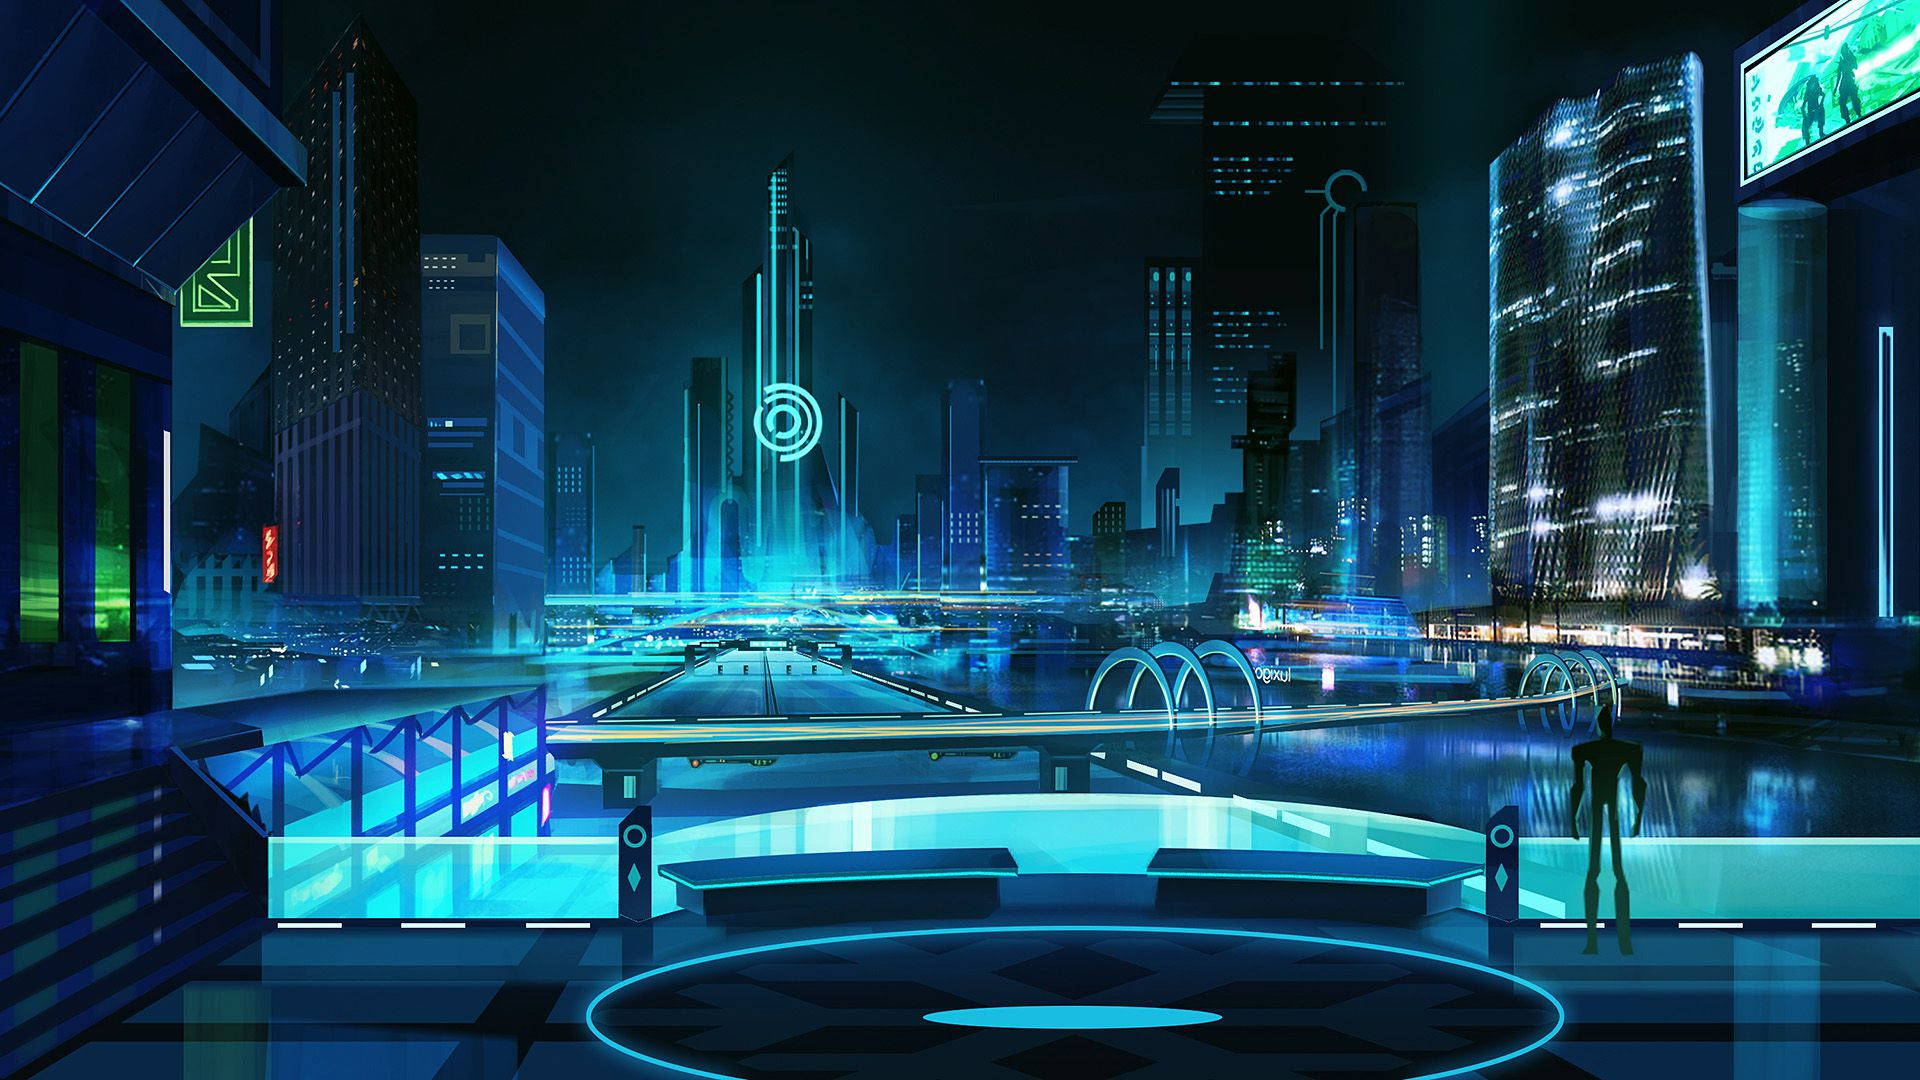 Imagenuna Visión Futurista De Una Ciudad Cyberpunk Iluminada Por Neón, 2020. Fondo de pantalla